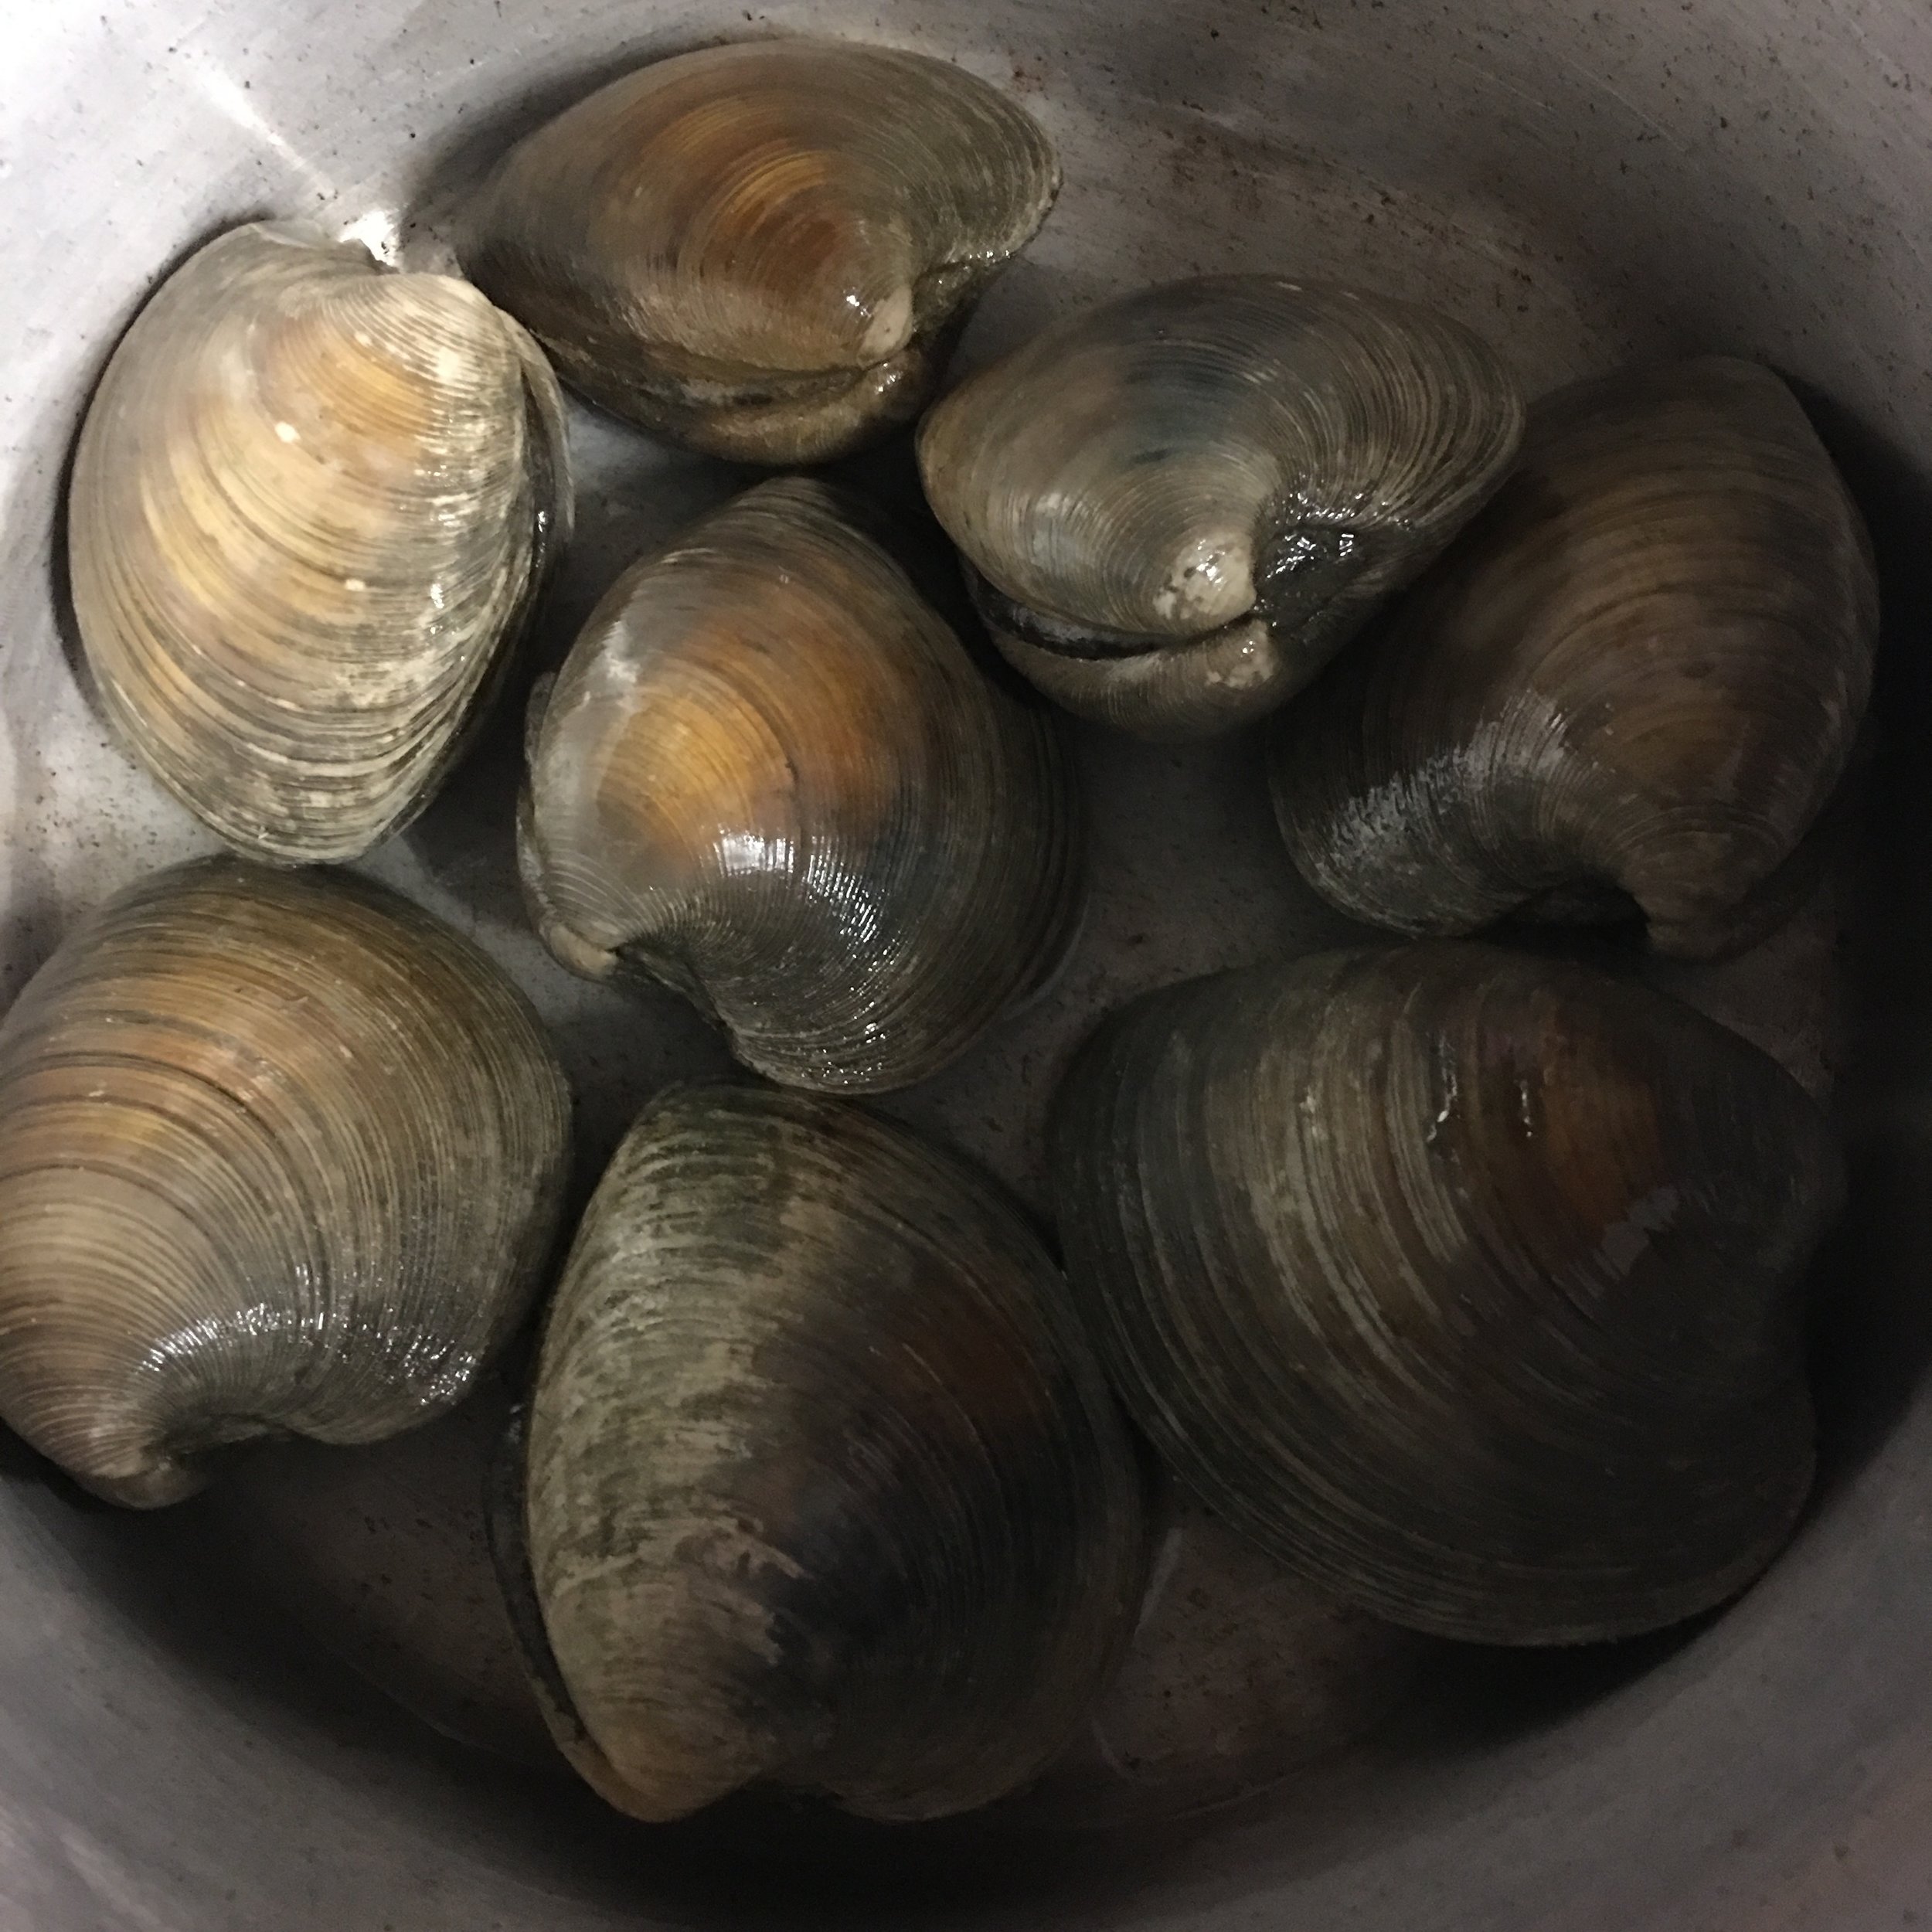 Plump quahog clams ready for a steam!&nbsp;